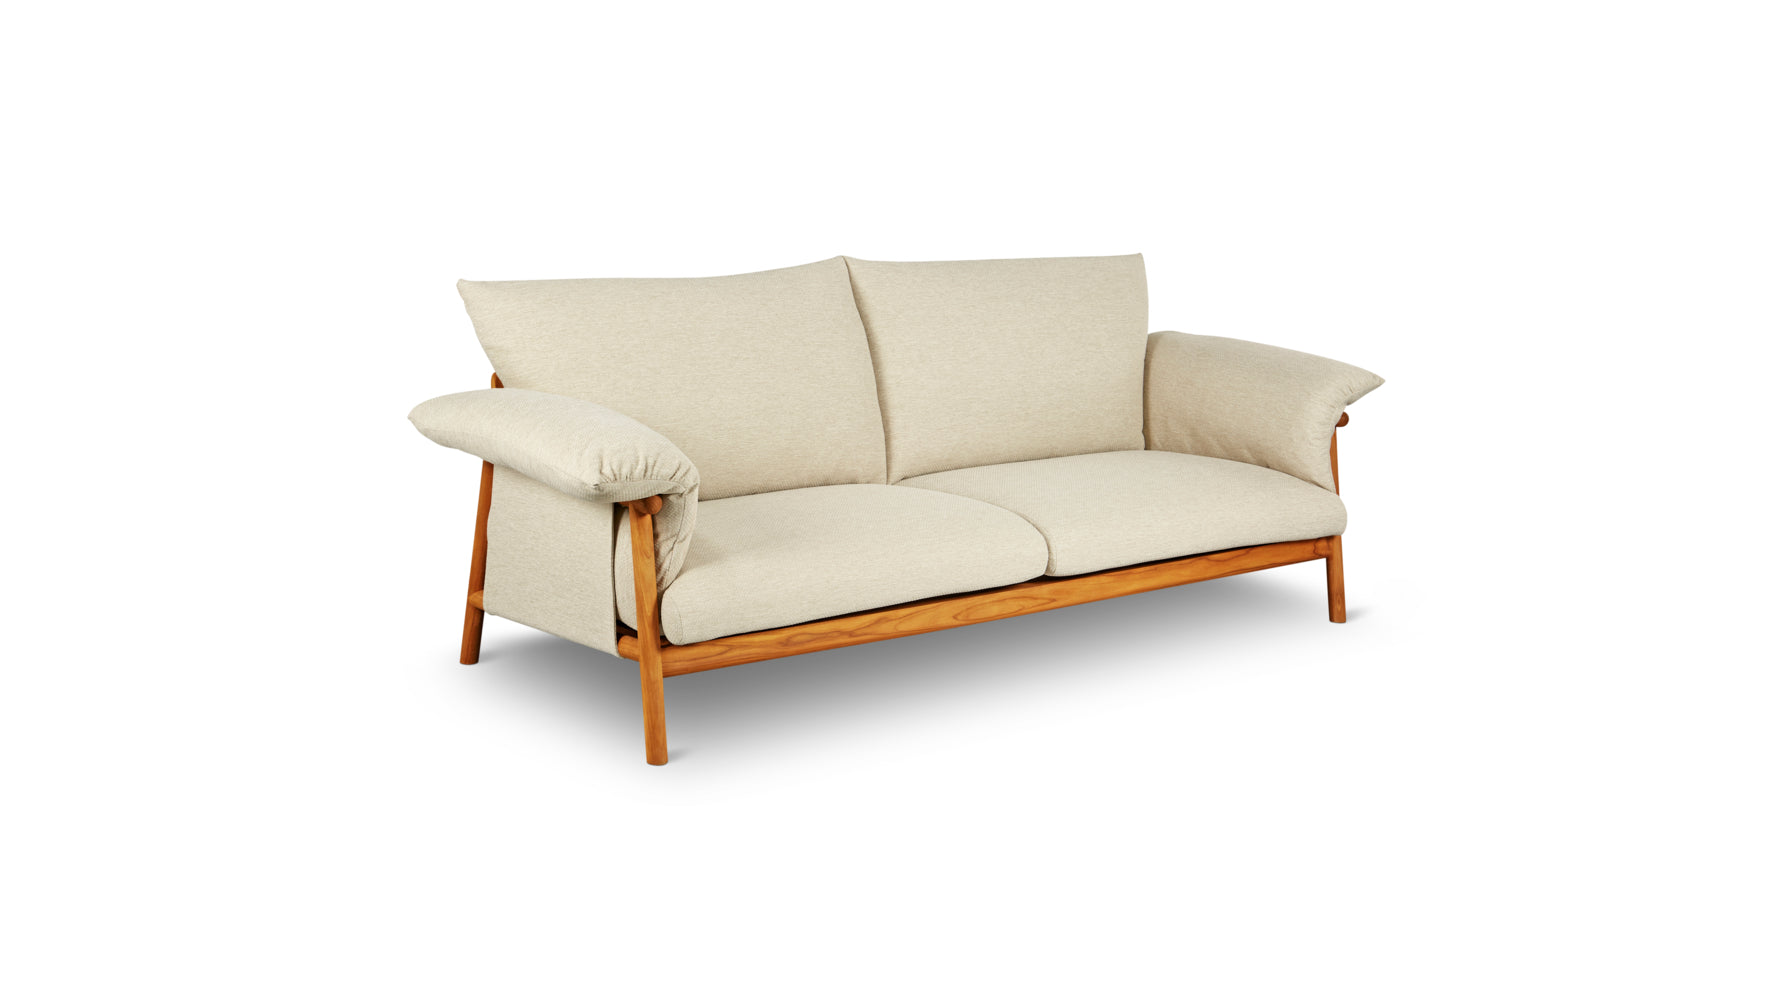 Pillow Talk Outdoor Sofa, Sandy - Image 4